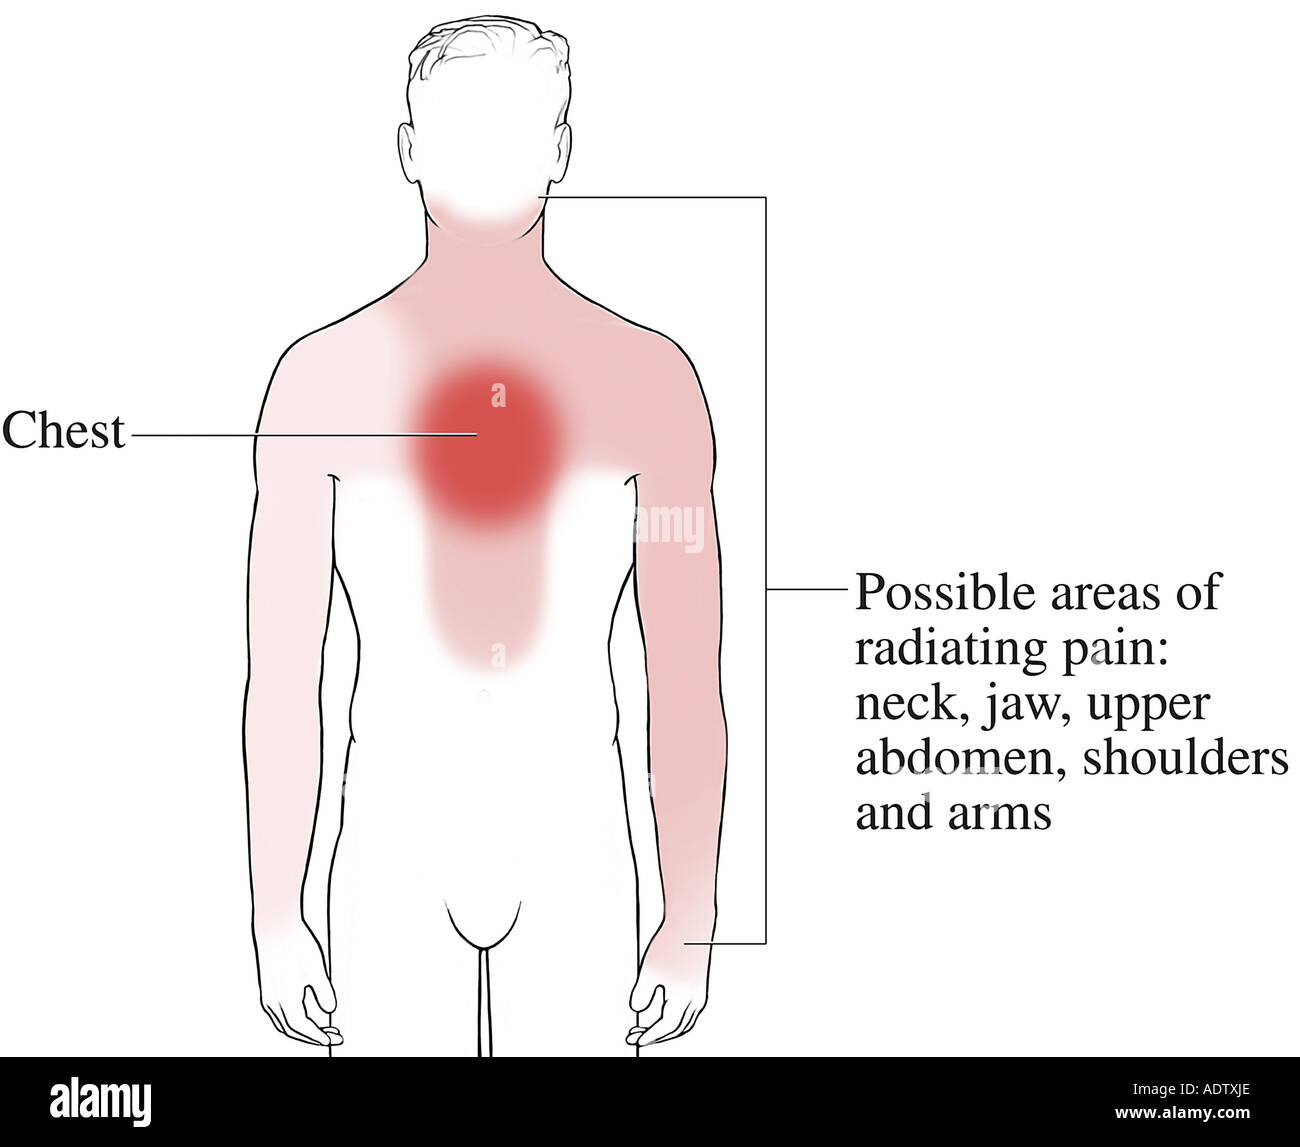 От чего может болеть грудная клетка. Локализация боли в грудине. Боль при стенокардии. Локализация стенокардии. Стенокардия иррадиация болей.